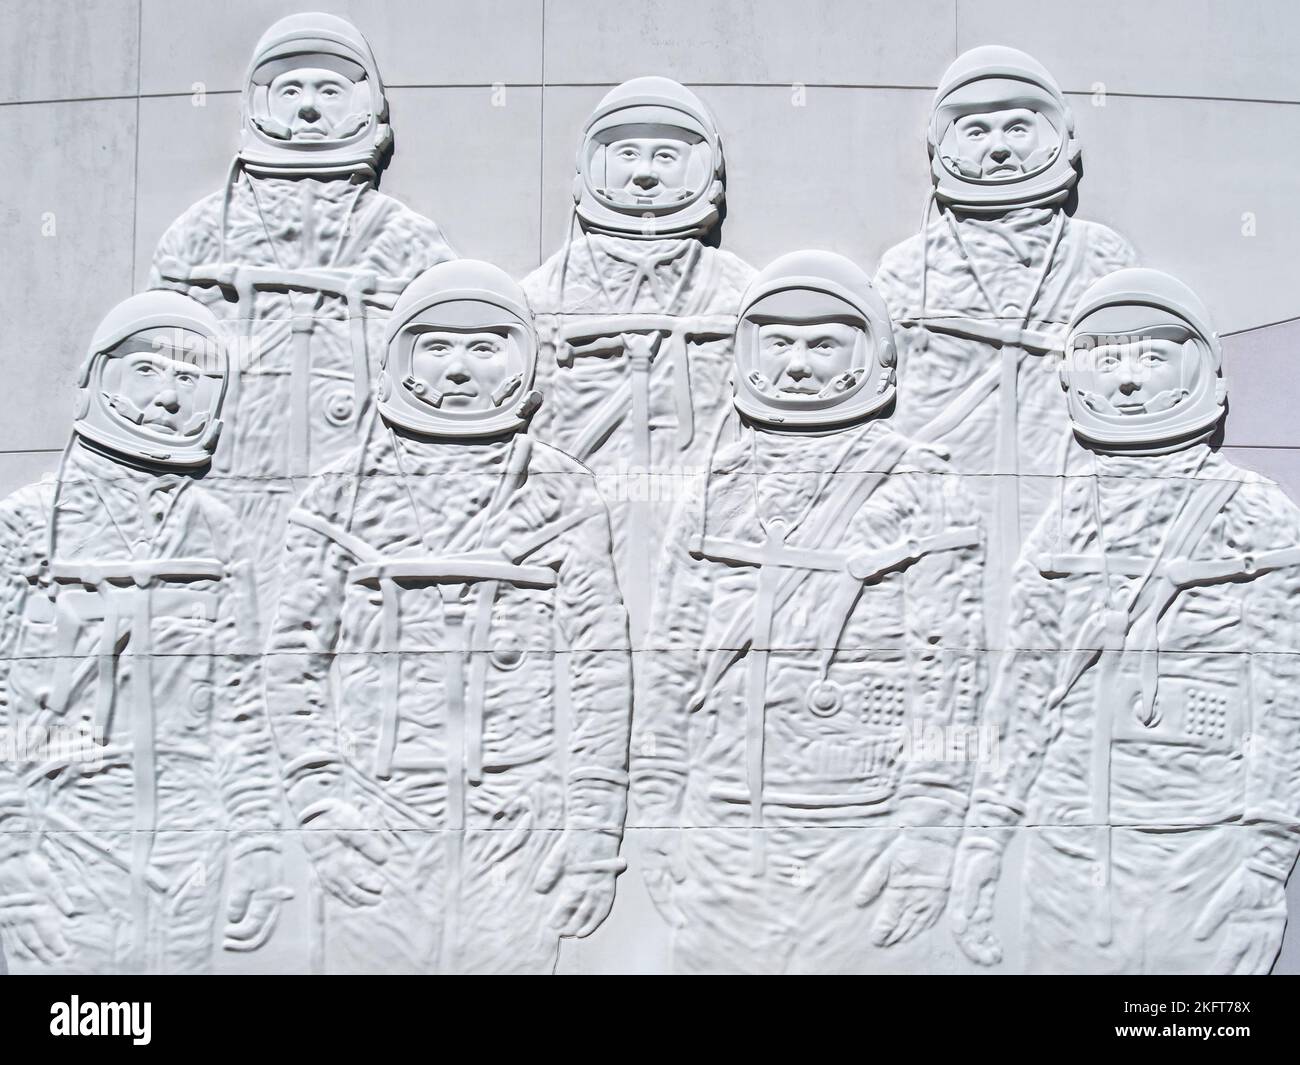 Il mercurio sette astronauti scultura presso il Kennedy Space Center Foto Stock